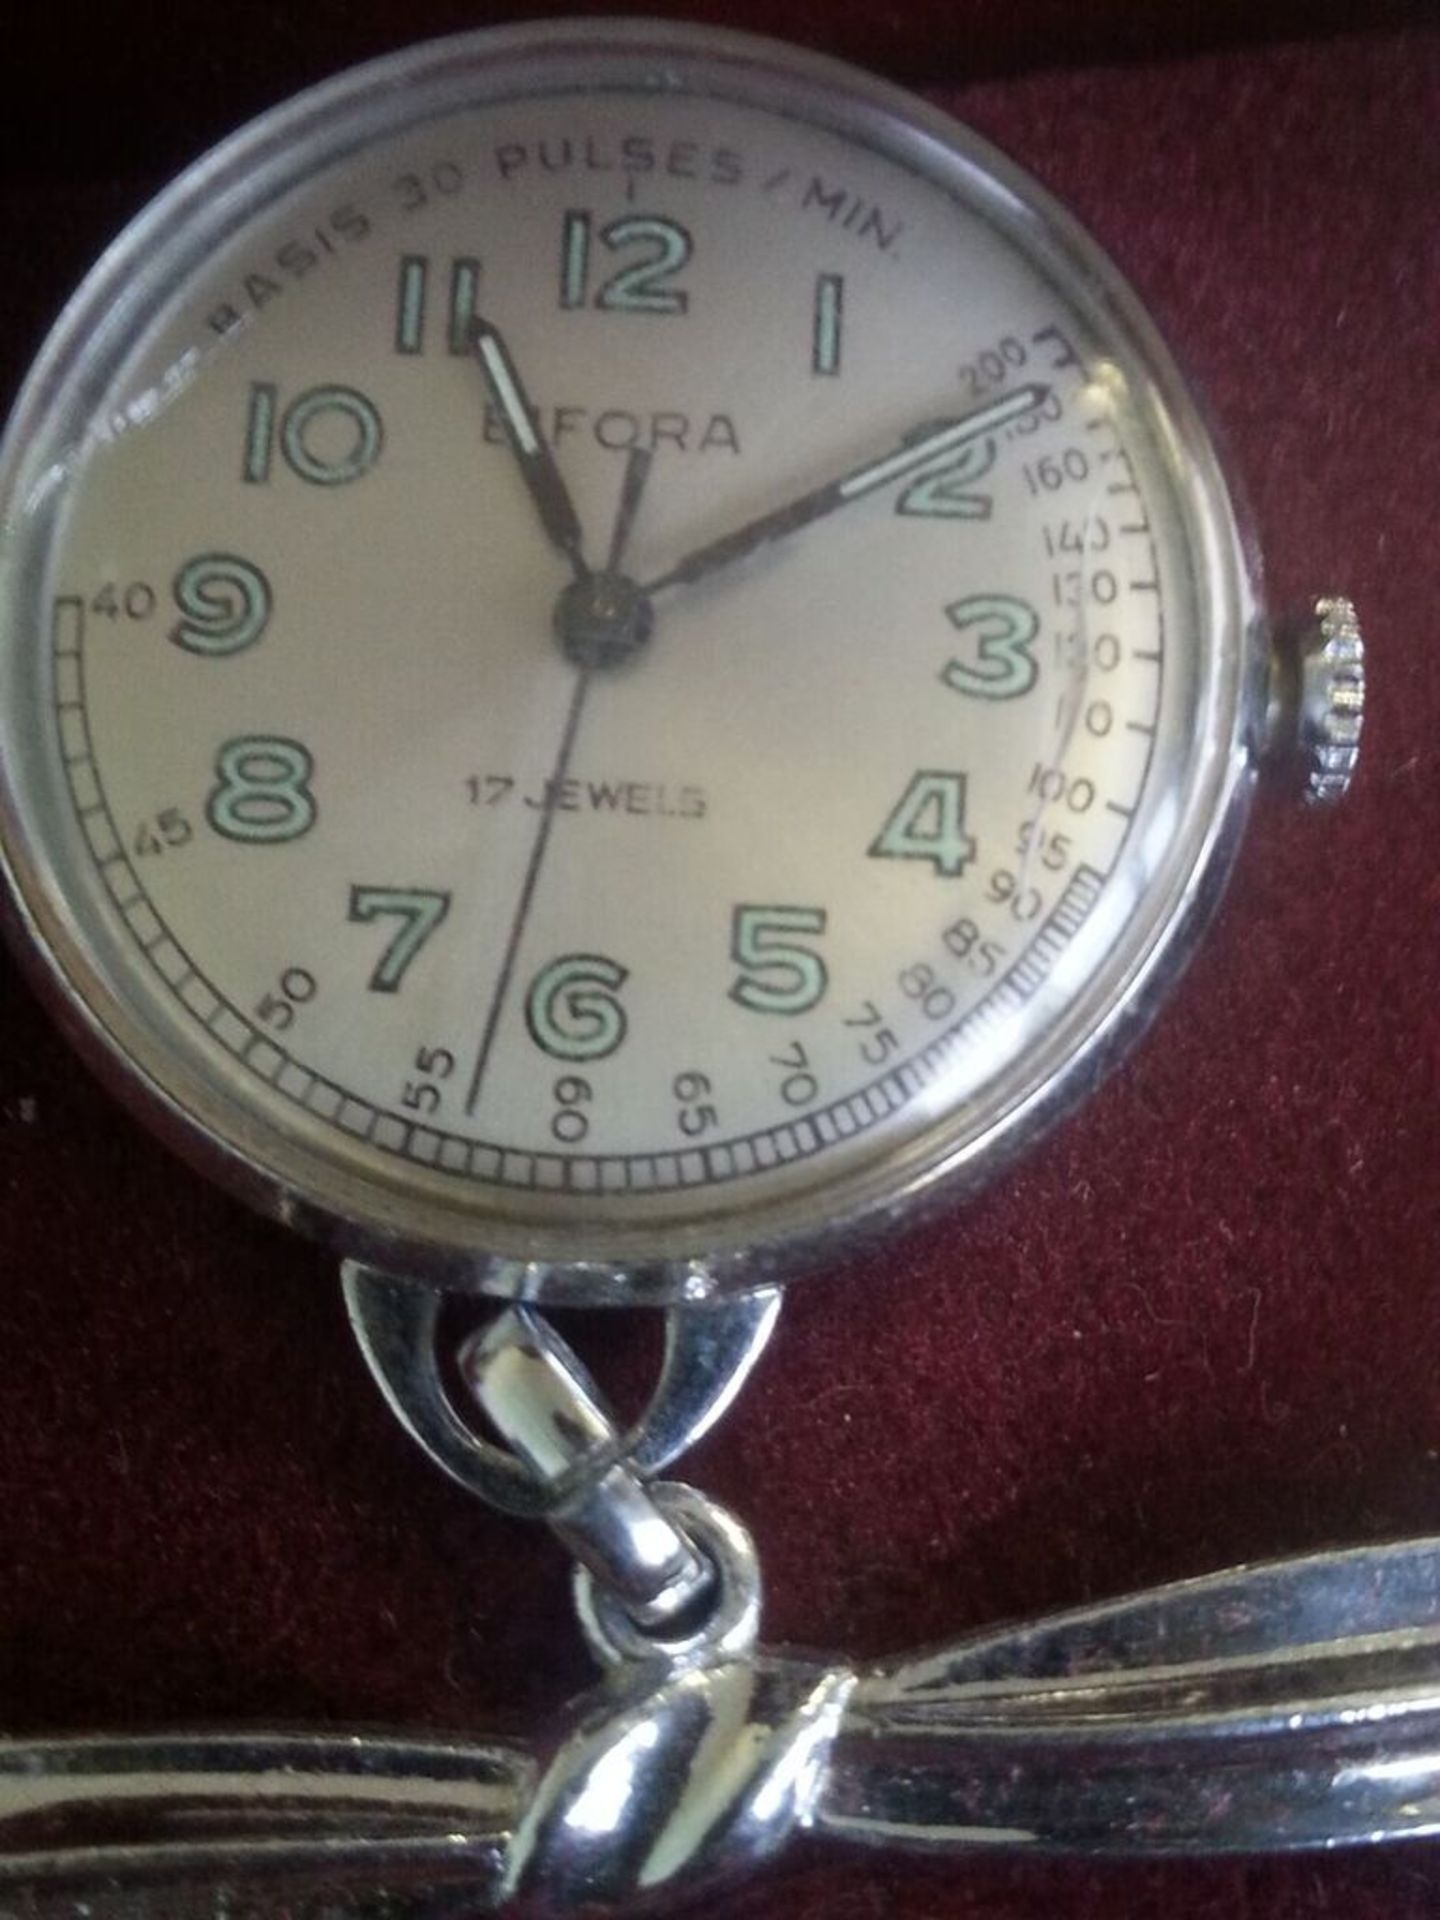 Bifora nurse's watch in working order